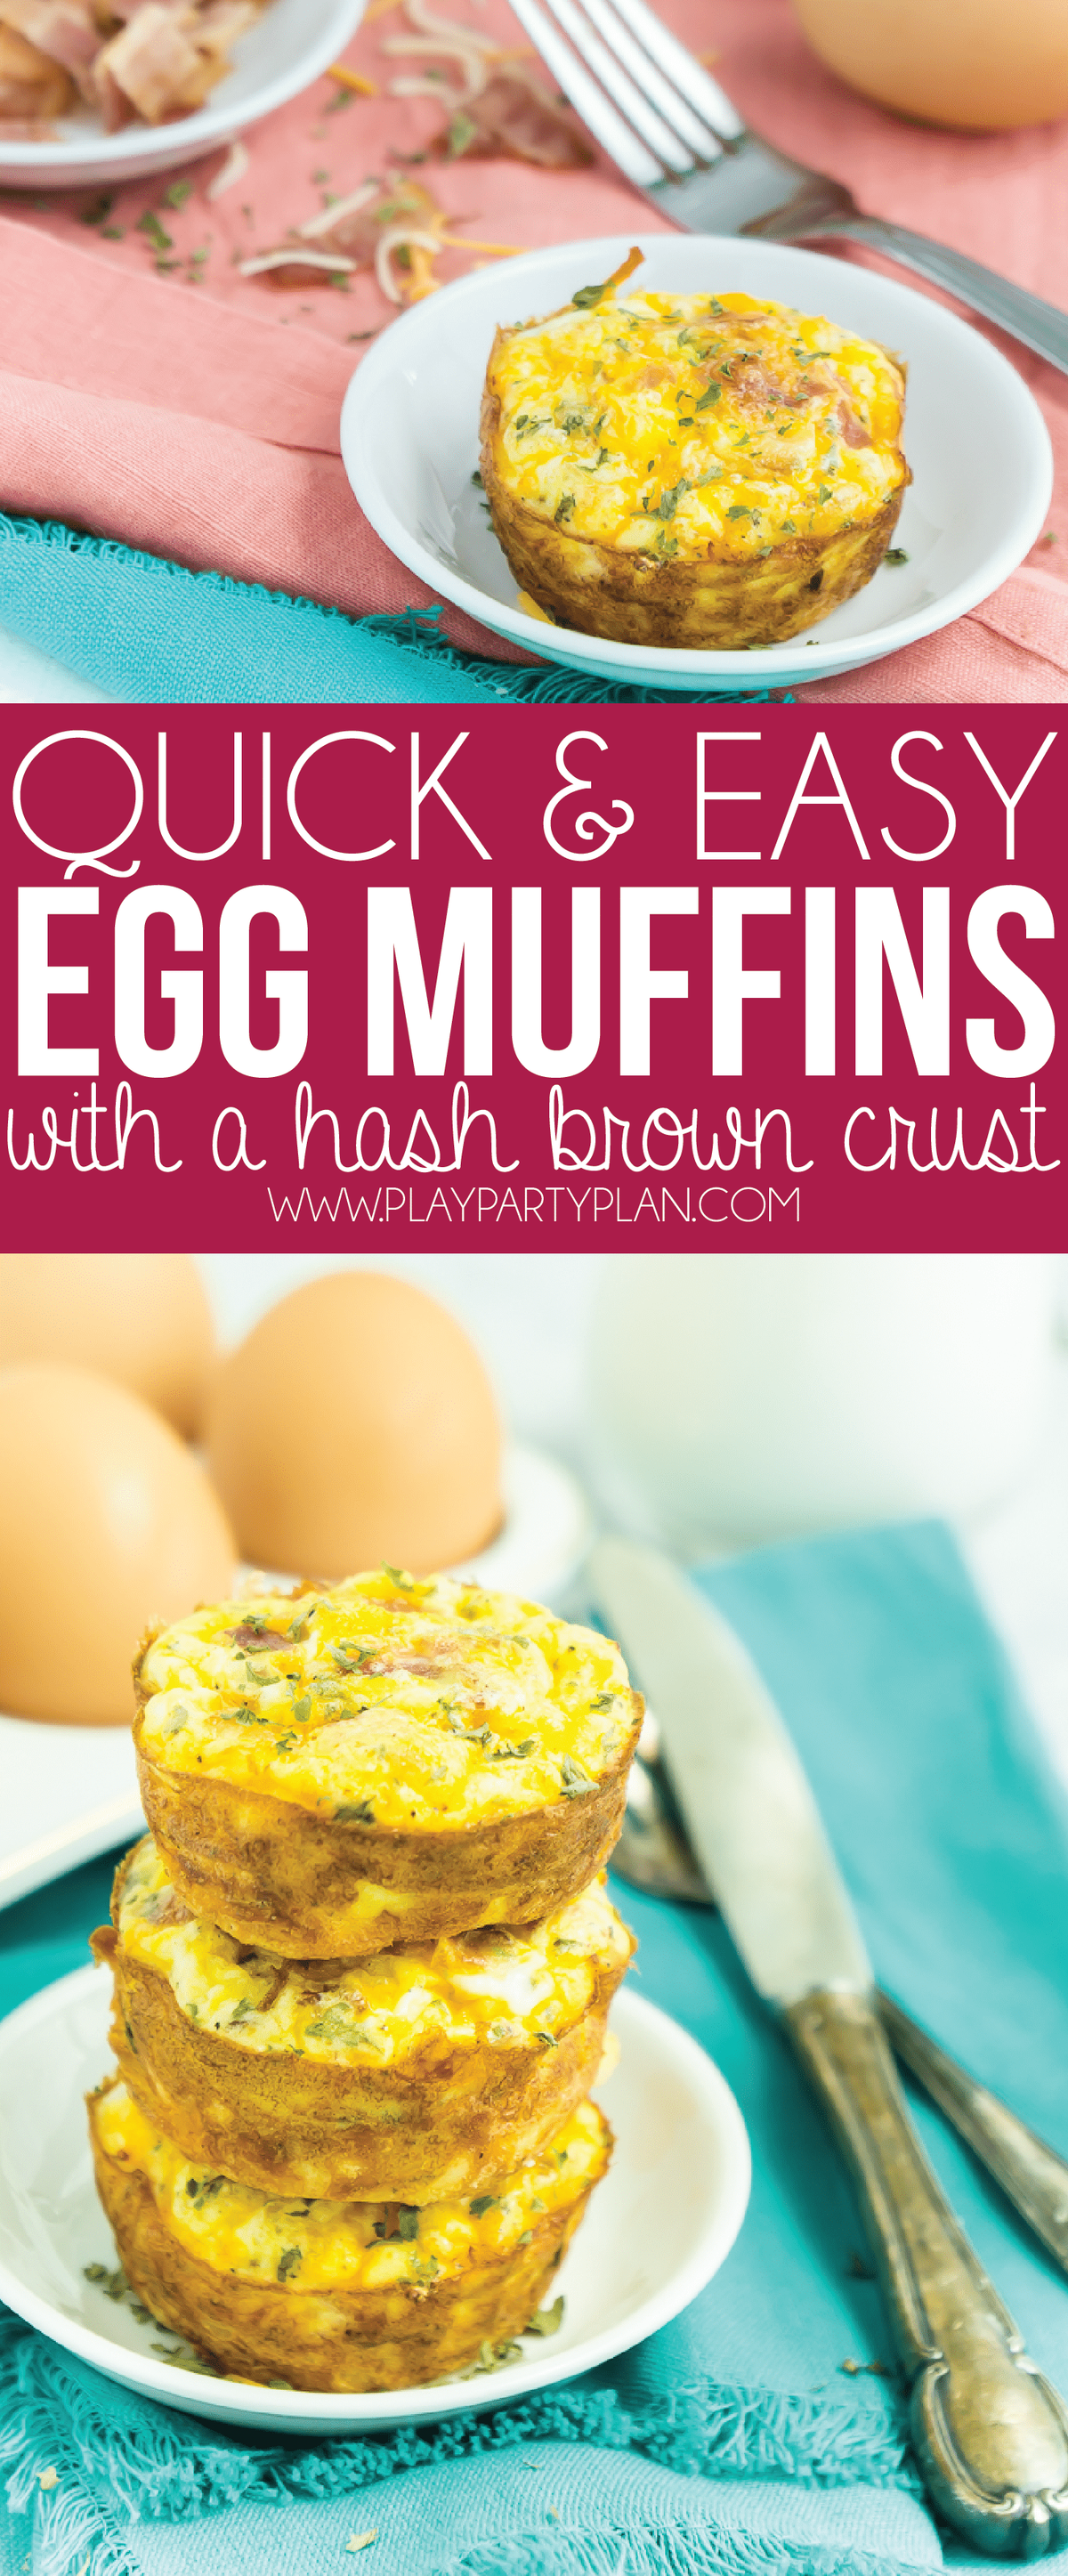 Τα καλύτερα muffins πρωινού με αυγό και hashbrowns! Ιδανικό για παιδιά ή ενήλικες και τόσο εύκολο στη δημιουργία